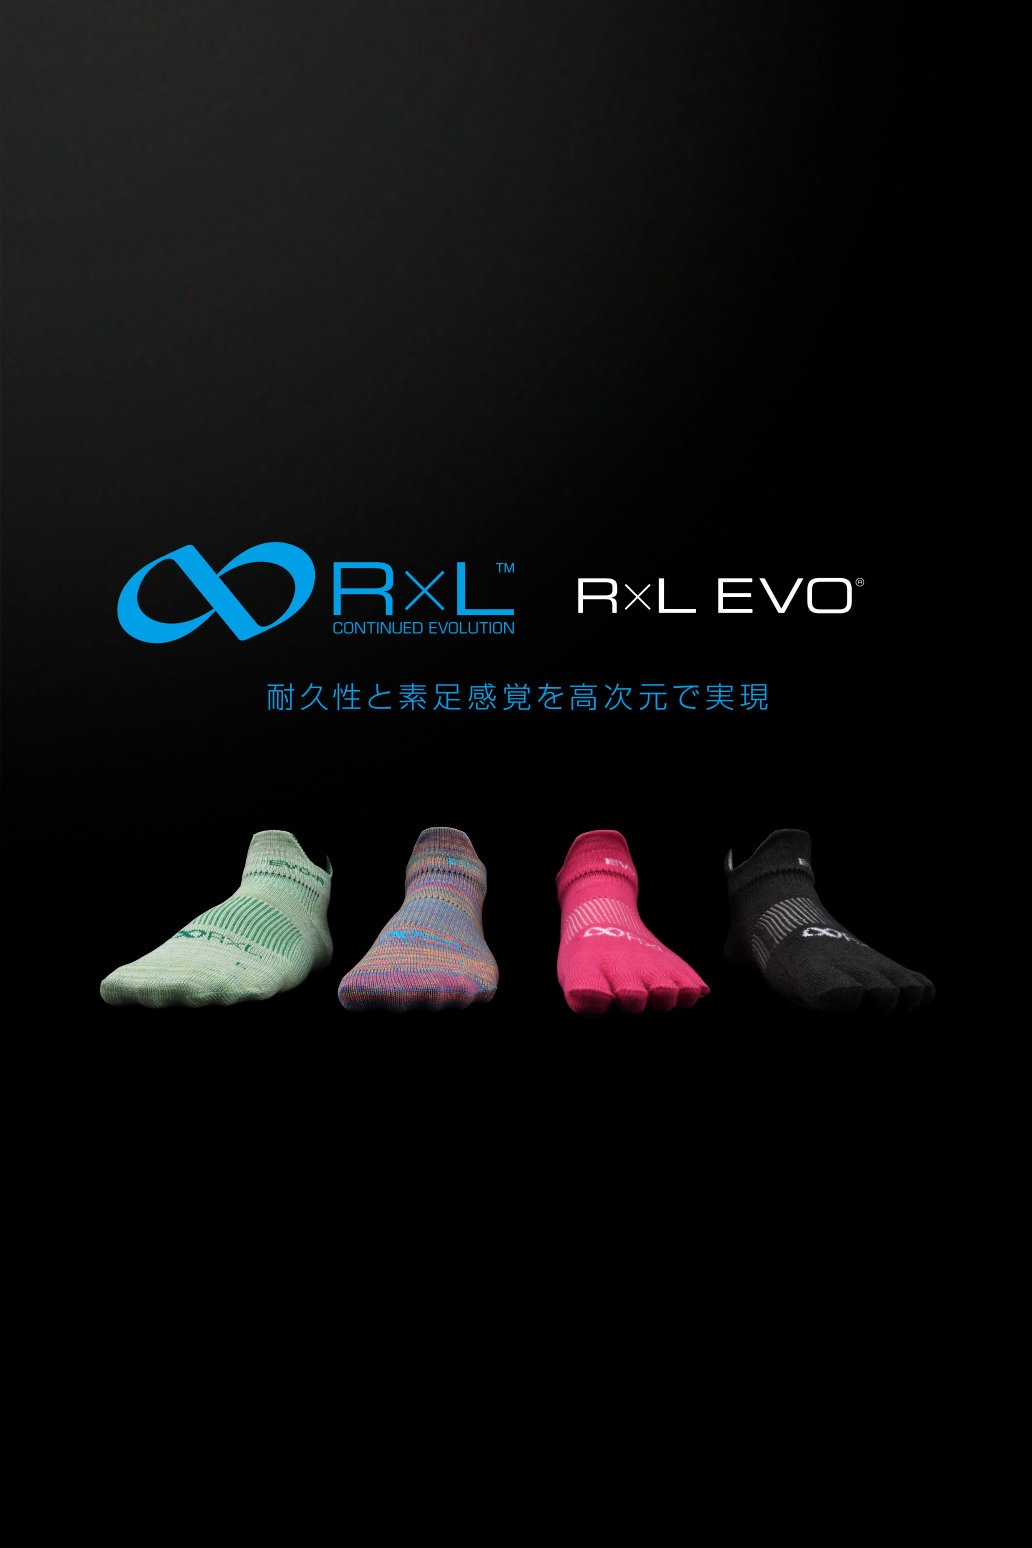 R L アールエル 公式サイト 靴下の製造と販売はr L アールエル